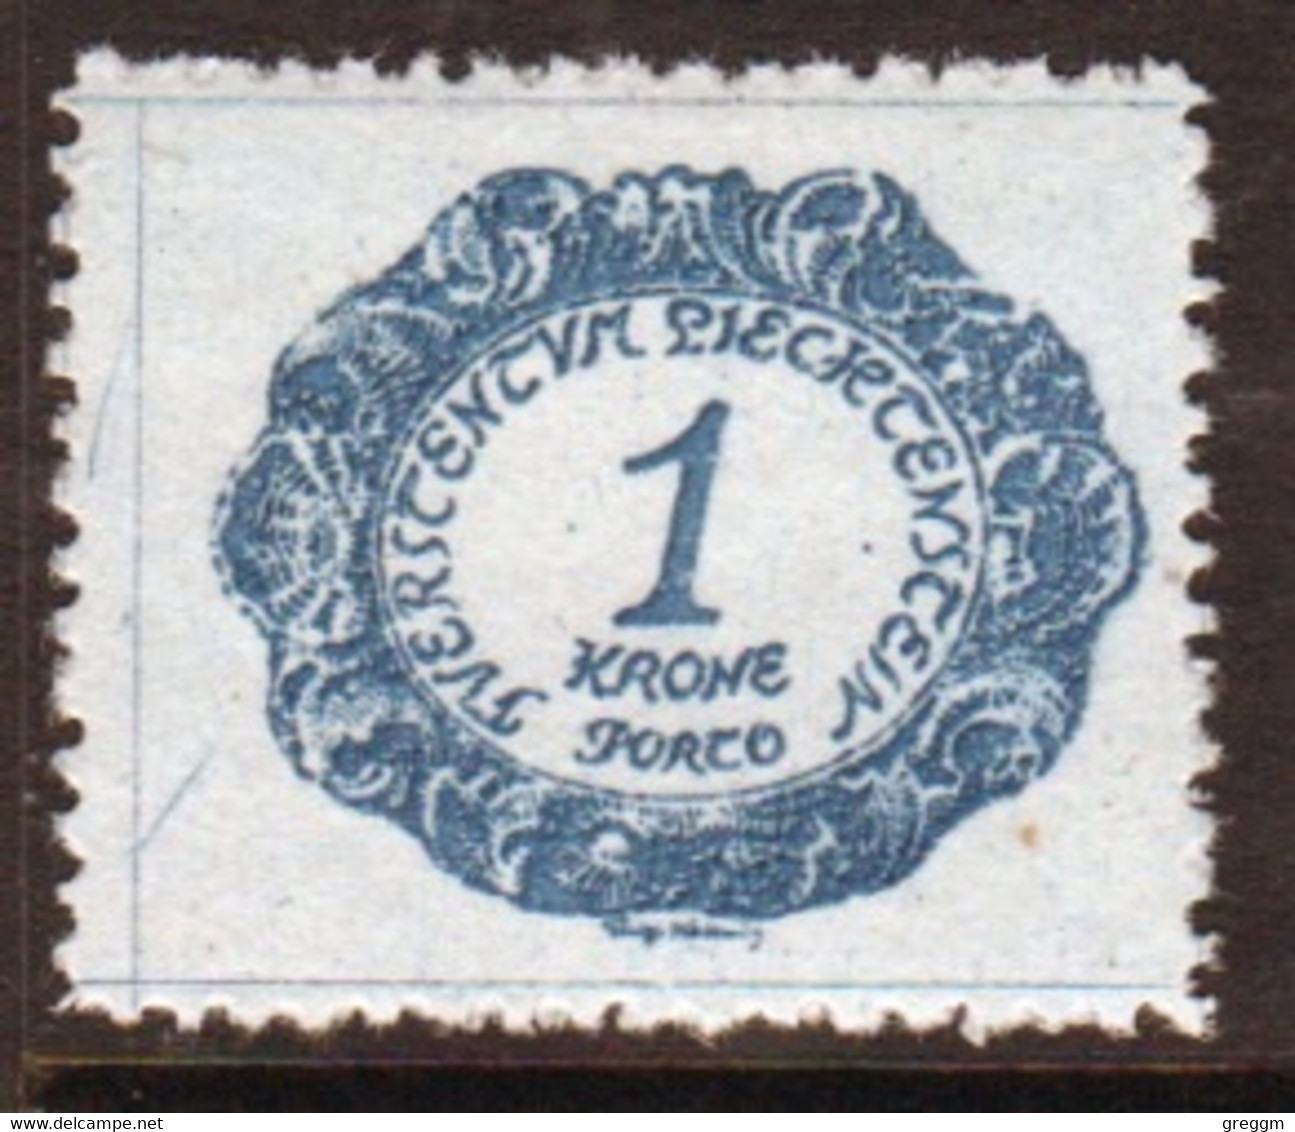 Liechtenstein 1920 Single 1k  Postage Due Stamp In Unmounted Mint Condition. - Postage Due